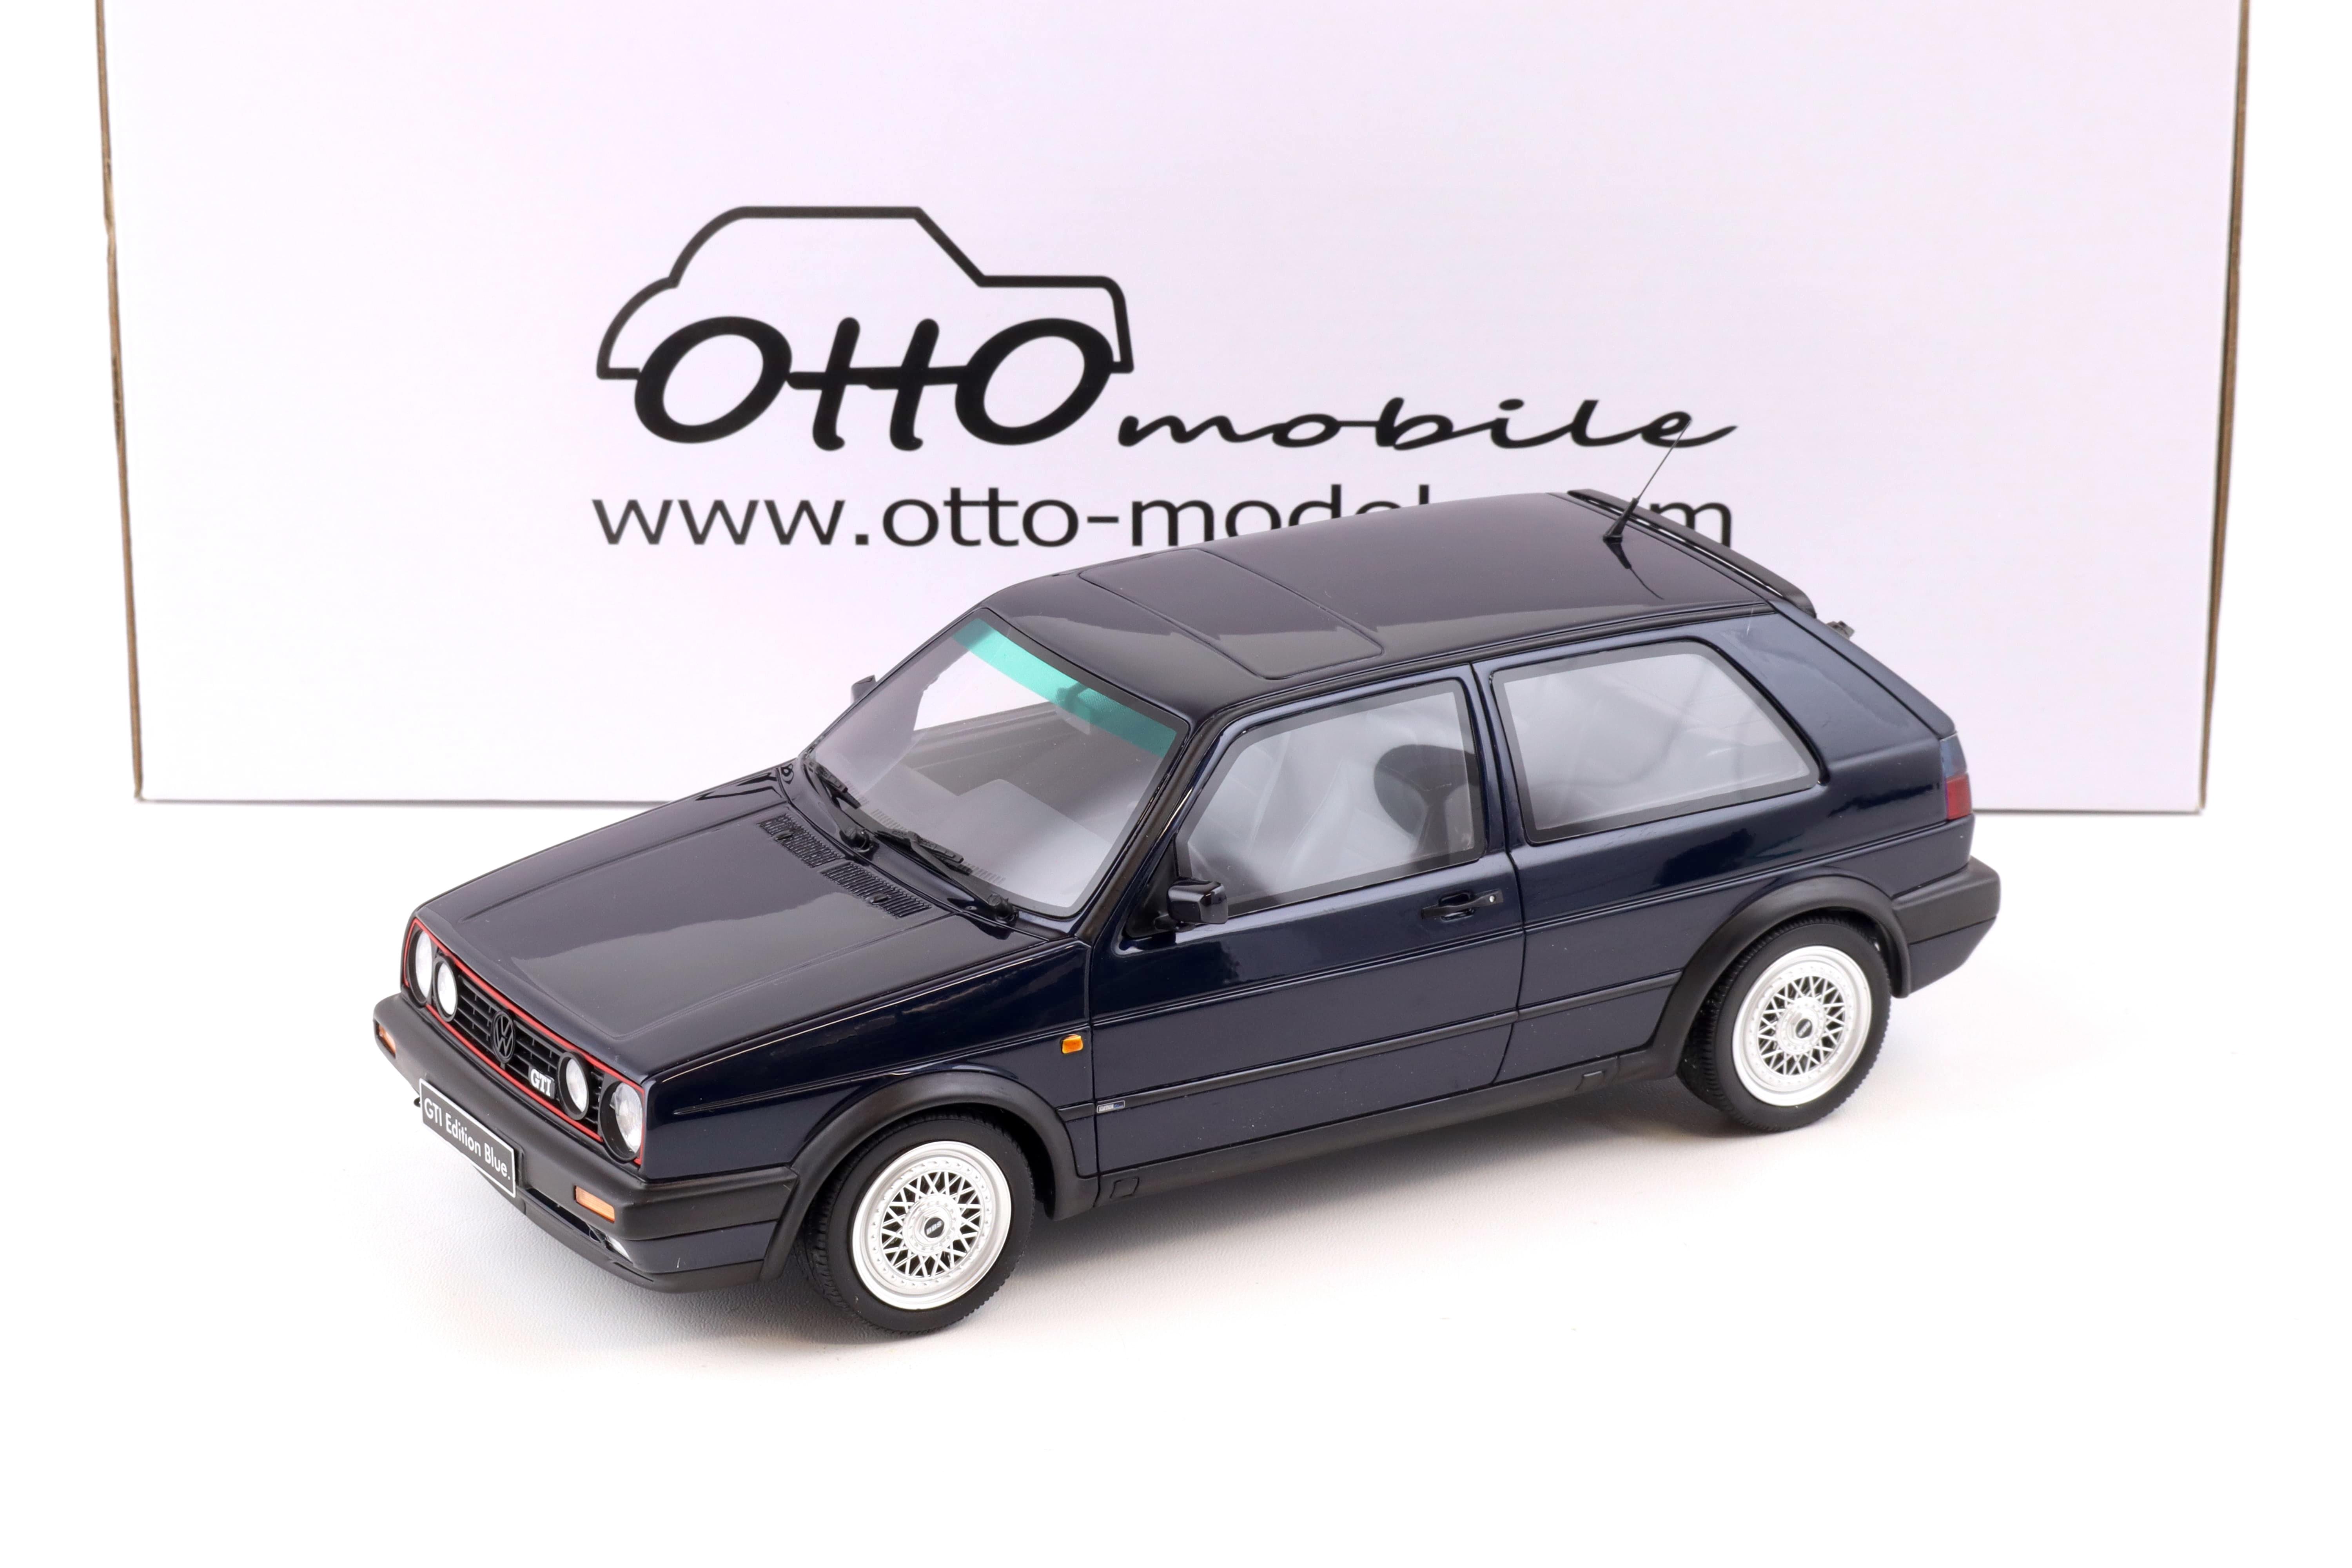 1:18 OTTO mobile OT1030 VW Golf 2 GTI Edition blue 1991